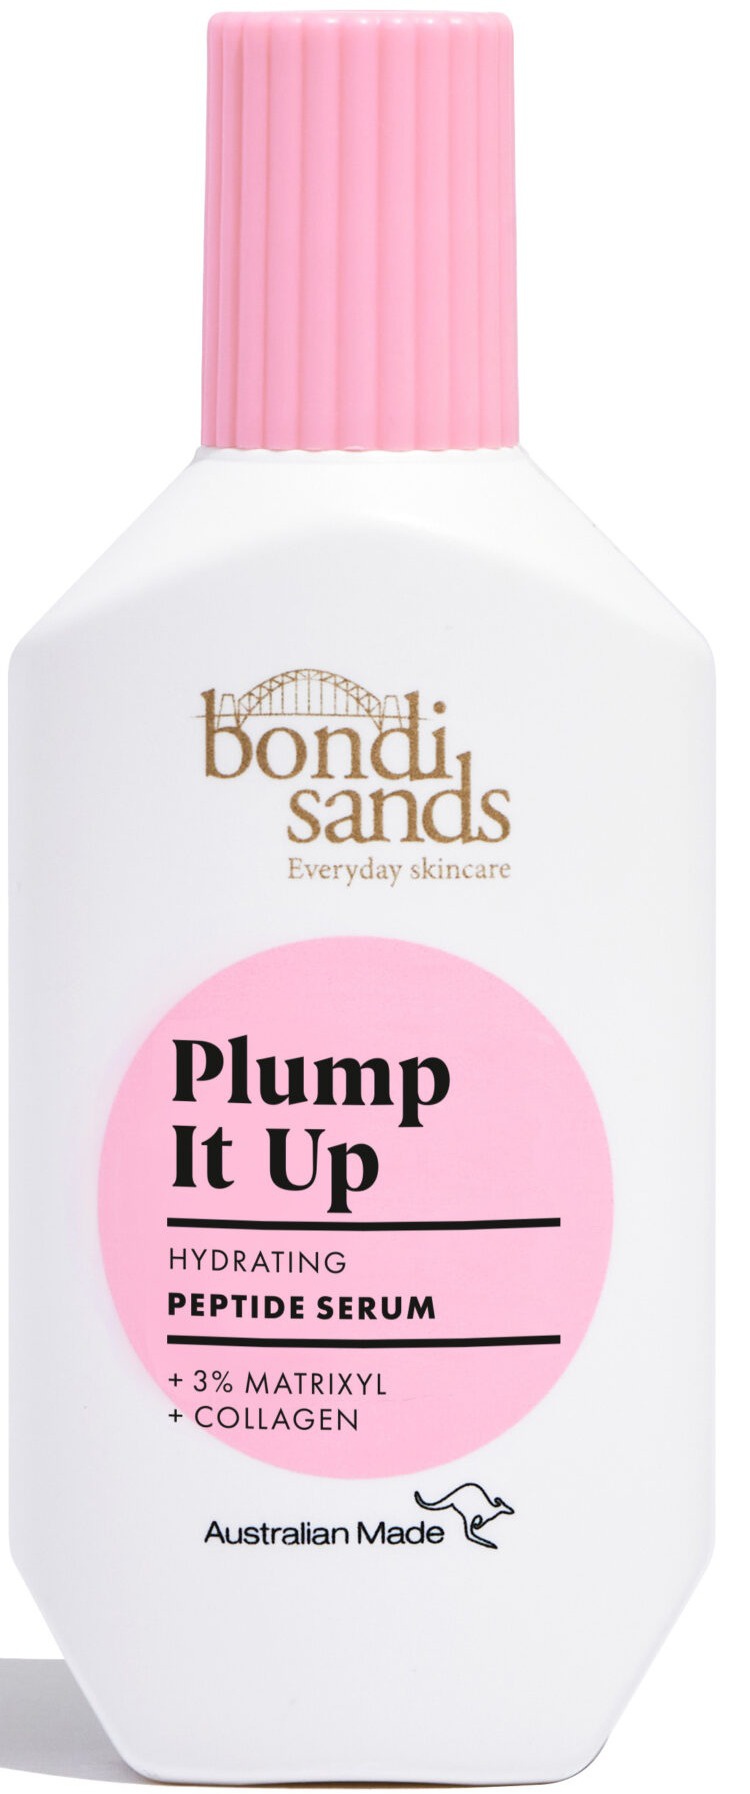 Bondi Sands Plump It Up Hydrating Peptide Serum